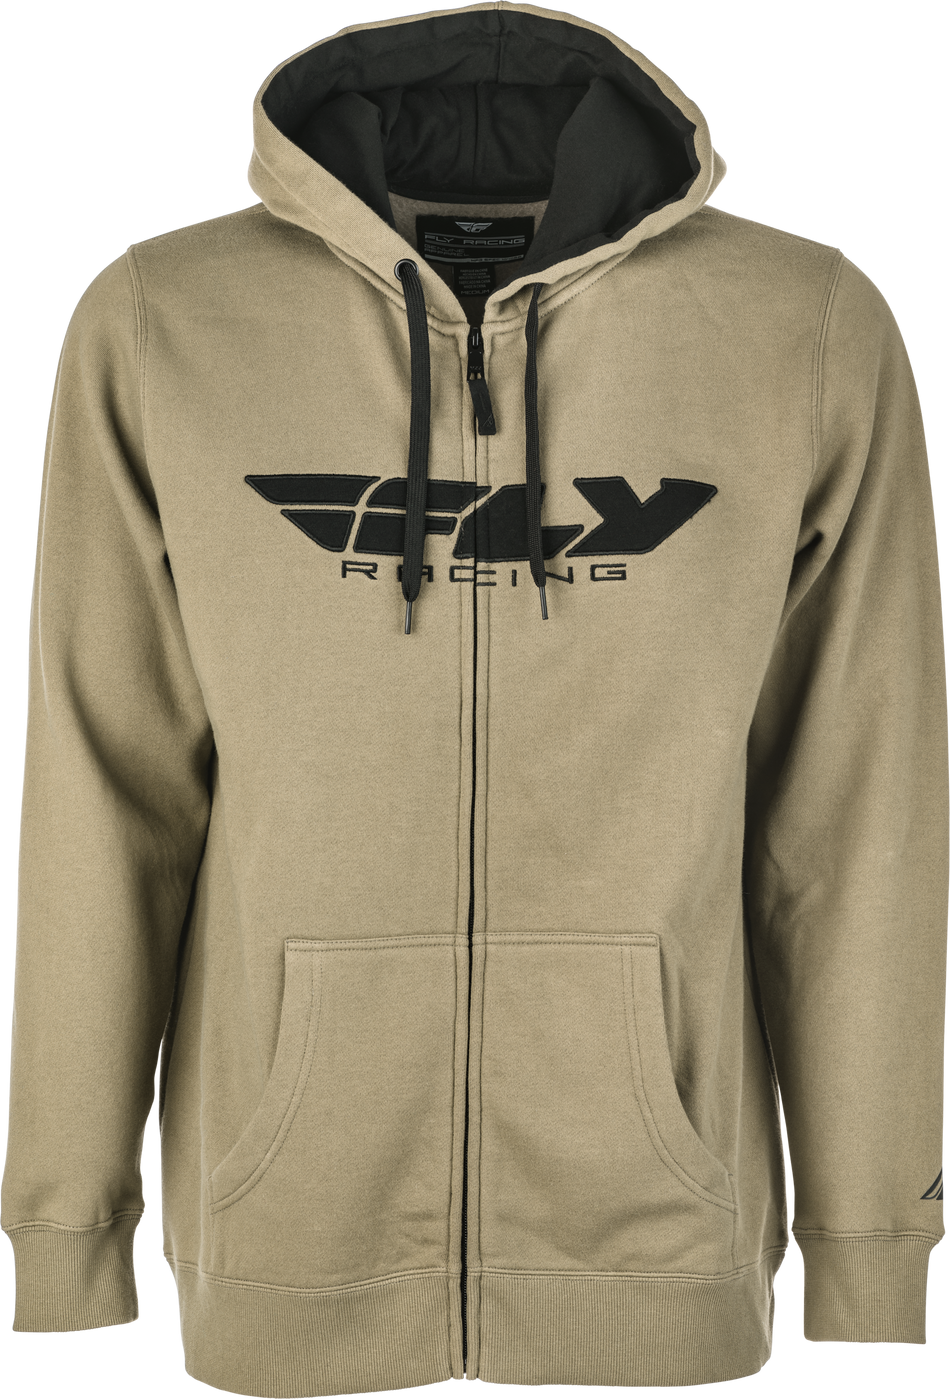 FLY RACING Fly Corporate Zip Up Hoodie Tan/Black Sm 354-0194S